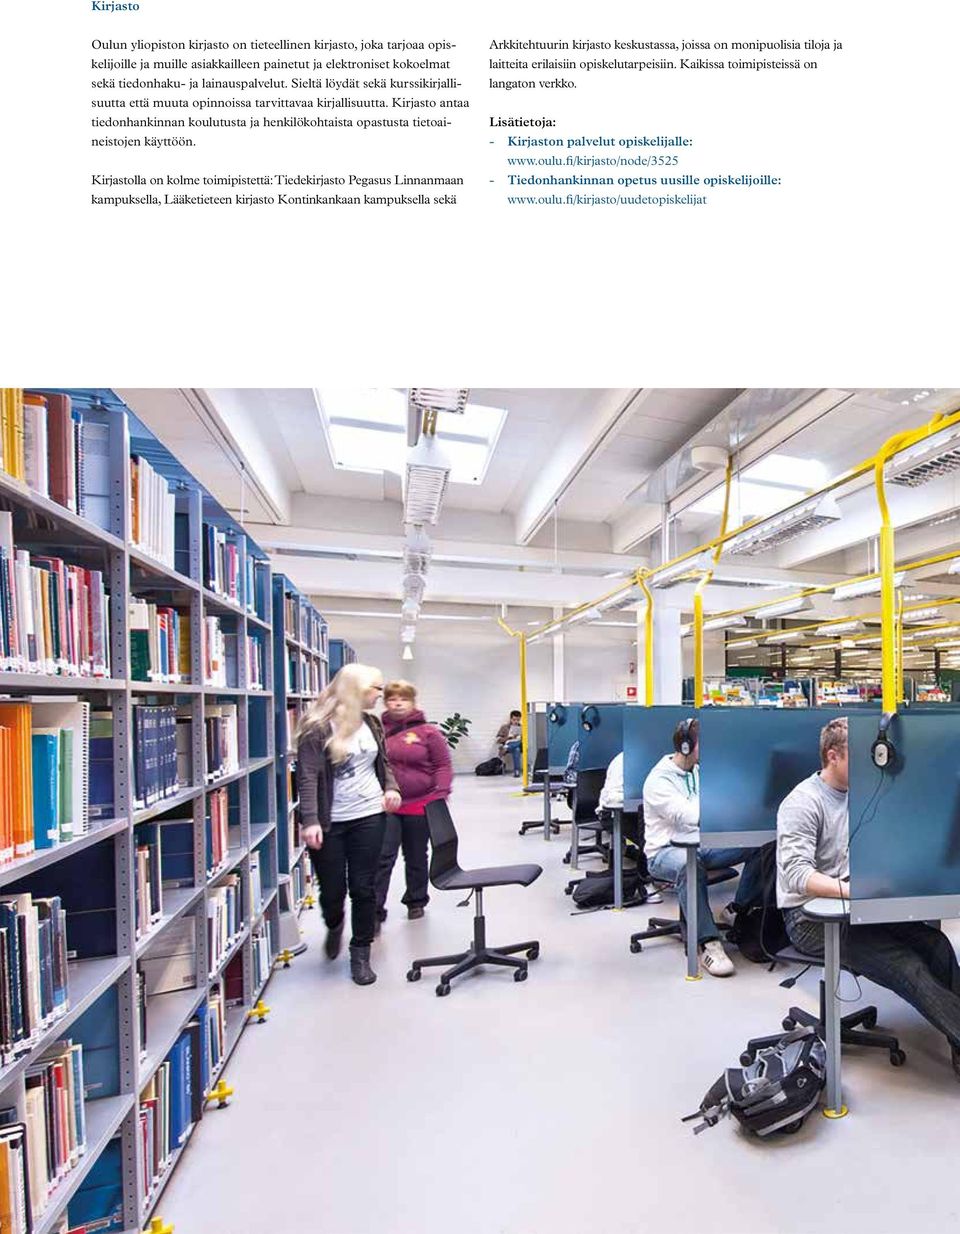 Kirjastolla on kolme toimipistettä: Tiedekirjasto Pegasus Linnanmaan kampuksella, Lääketieteen kirjasto Kontinkankaan kampuksella sekä Arkkitehtuurin kirjasto keskustassa, joissa on monipuolisia